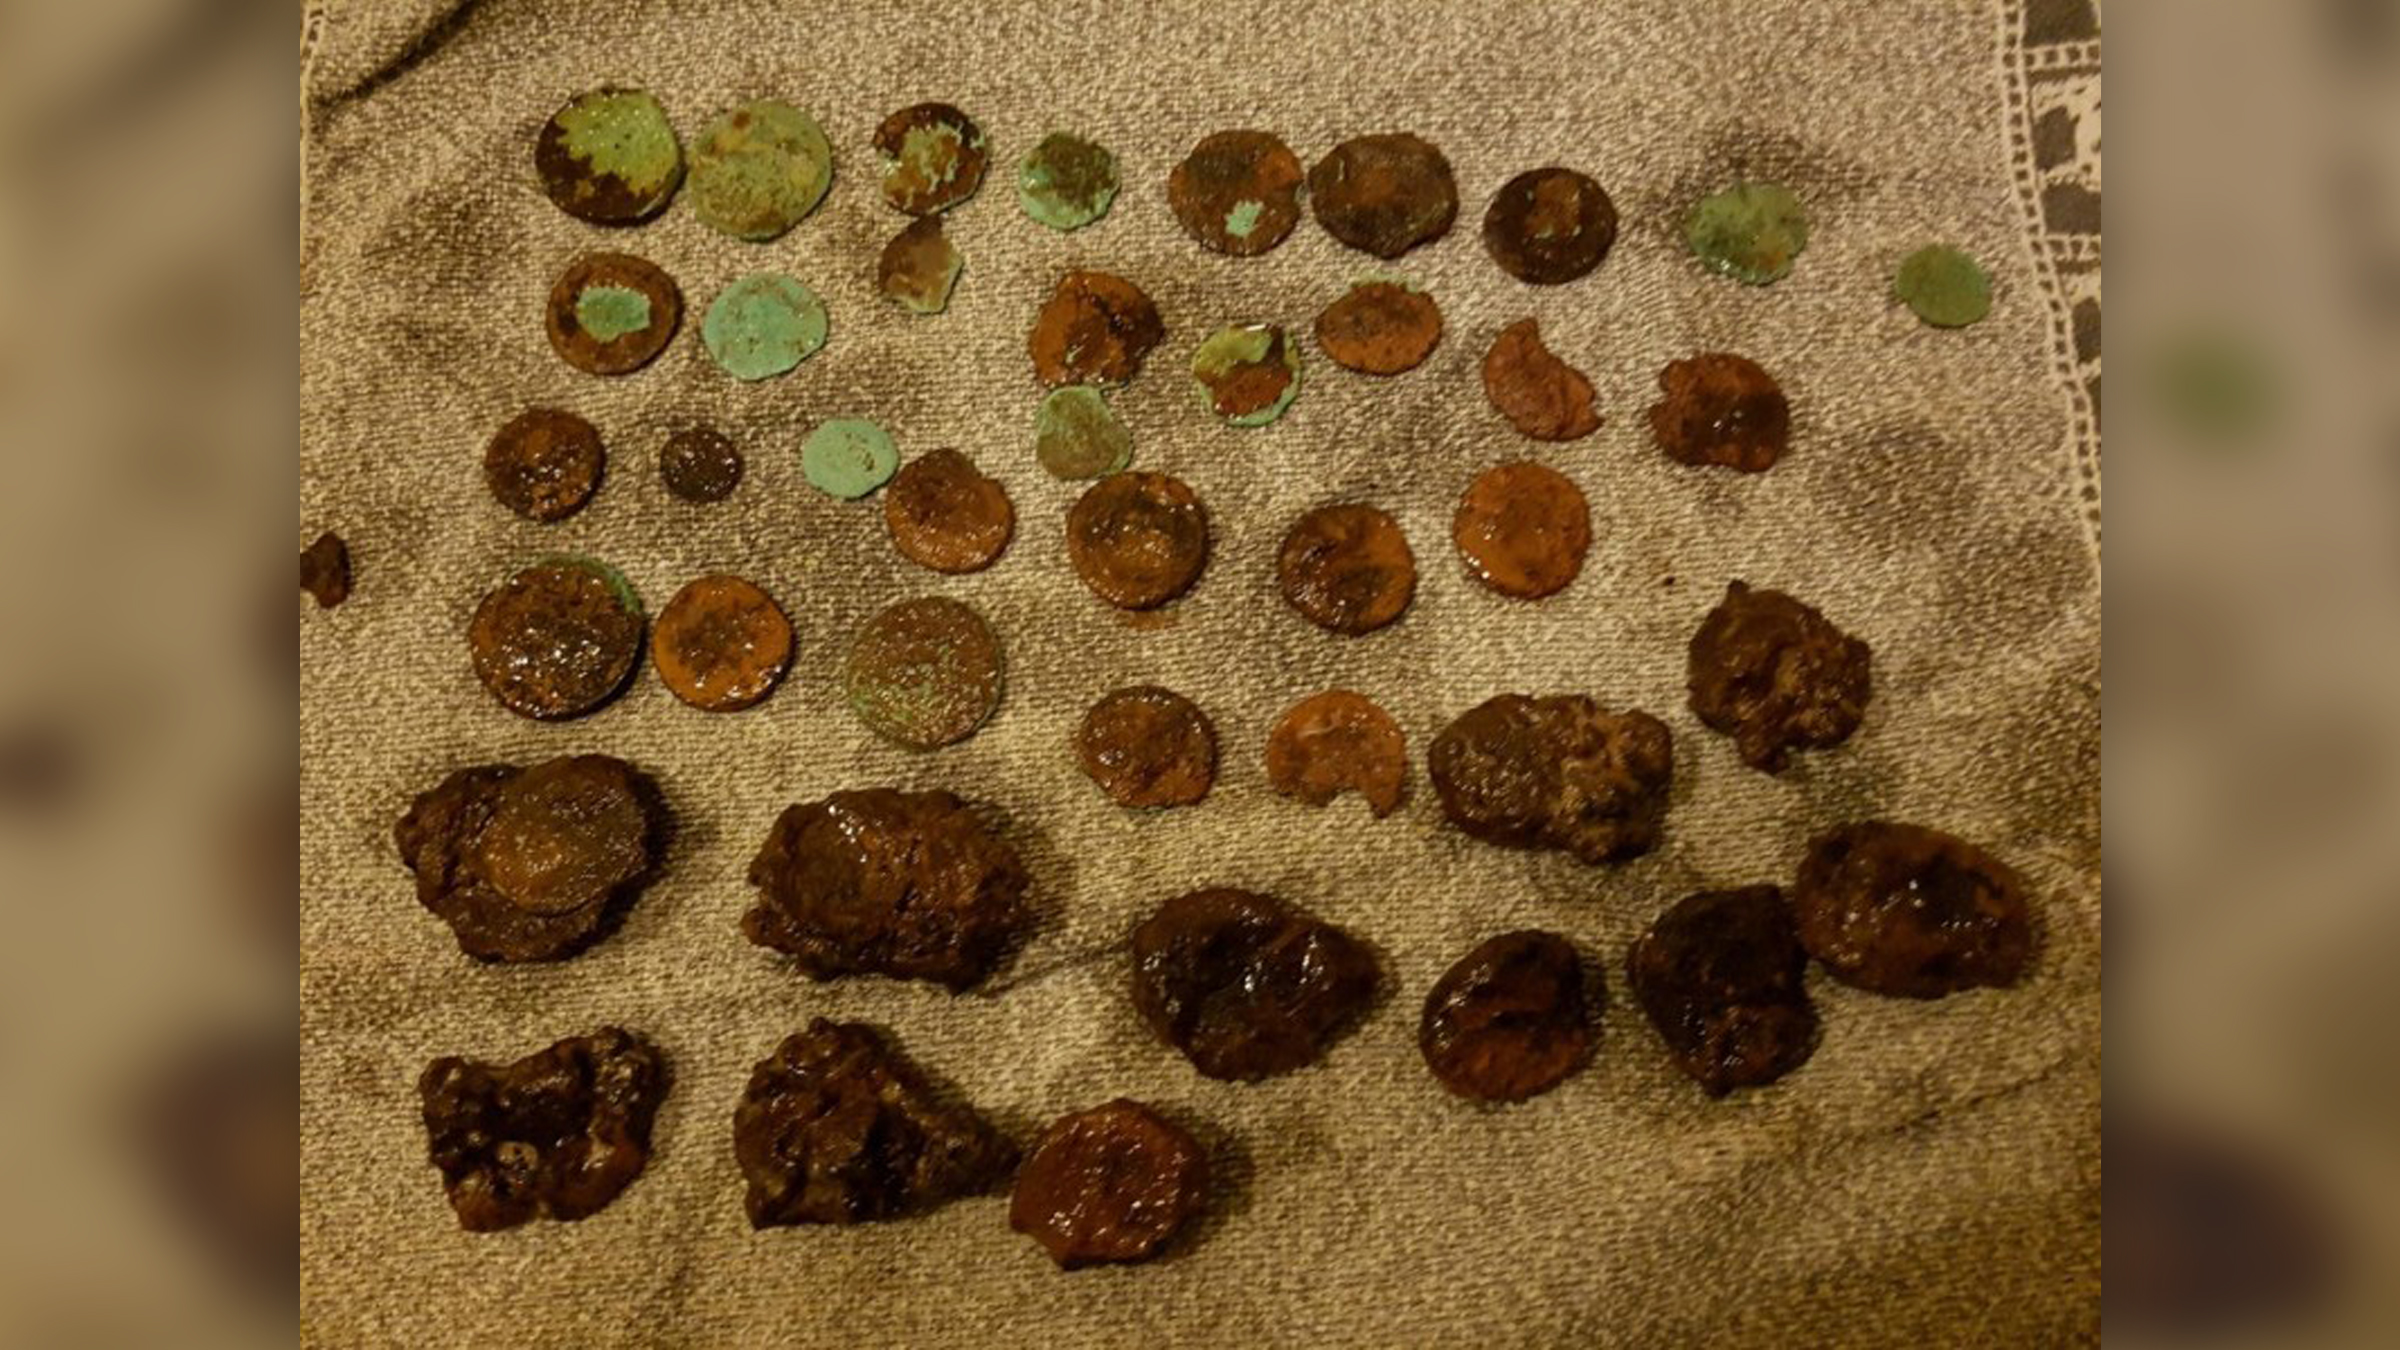 Einige der antiken römischen Münzen, nach ihrer Entdeckung und einer ersten Reinigung.